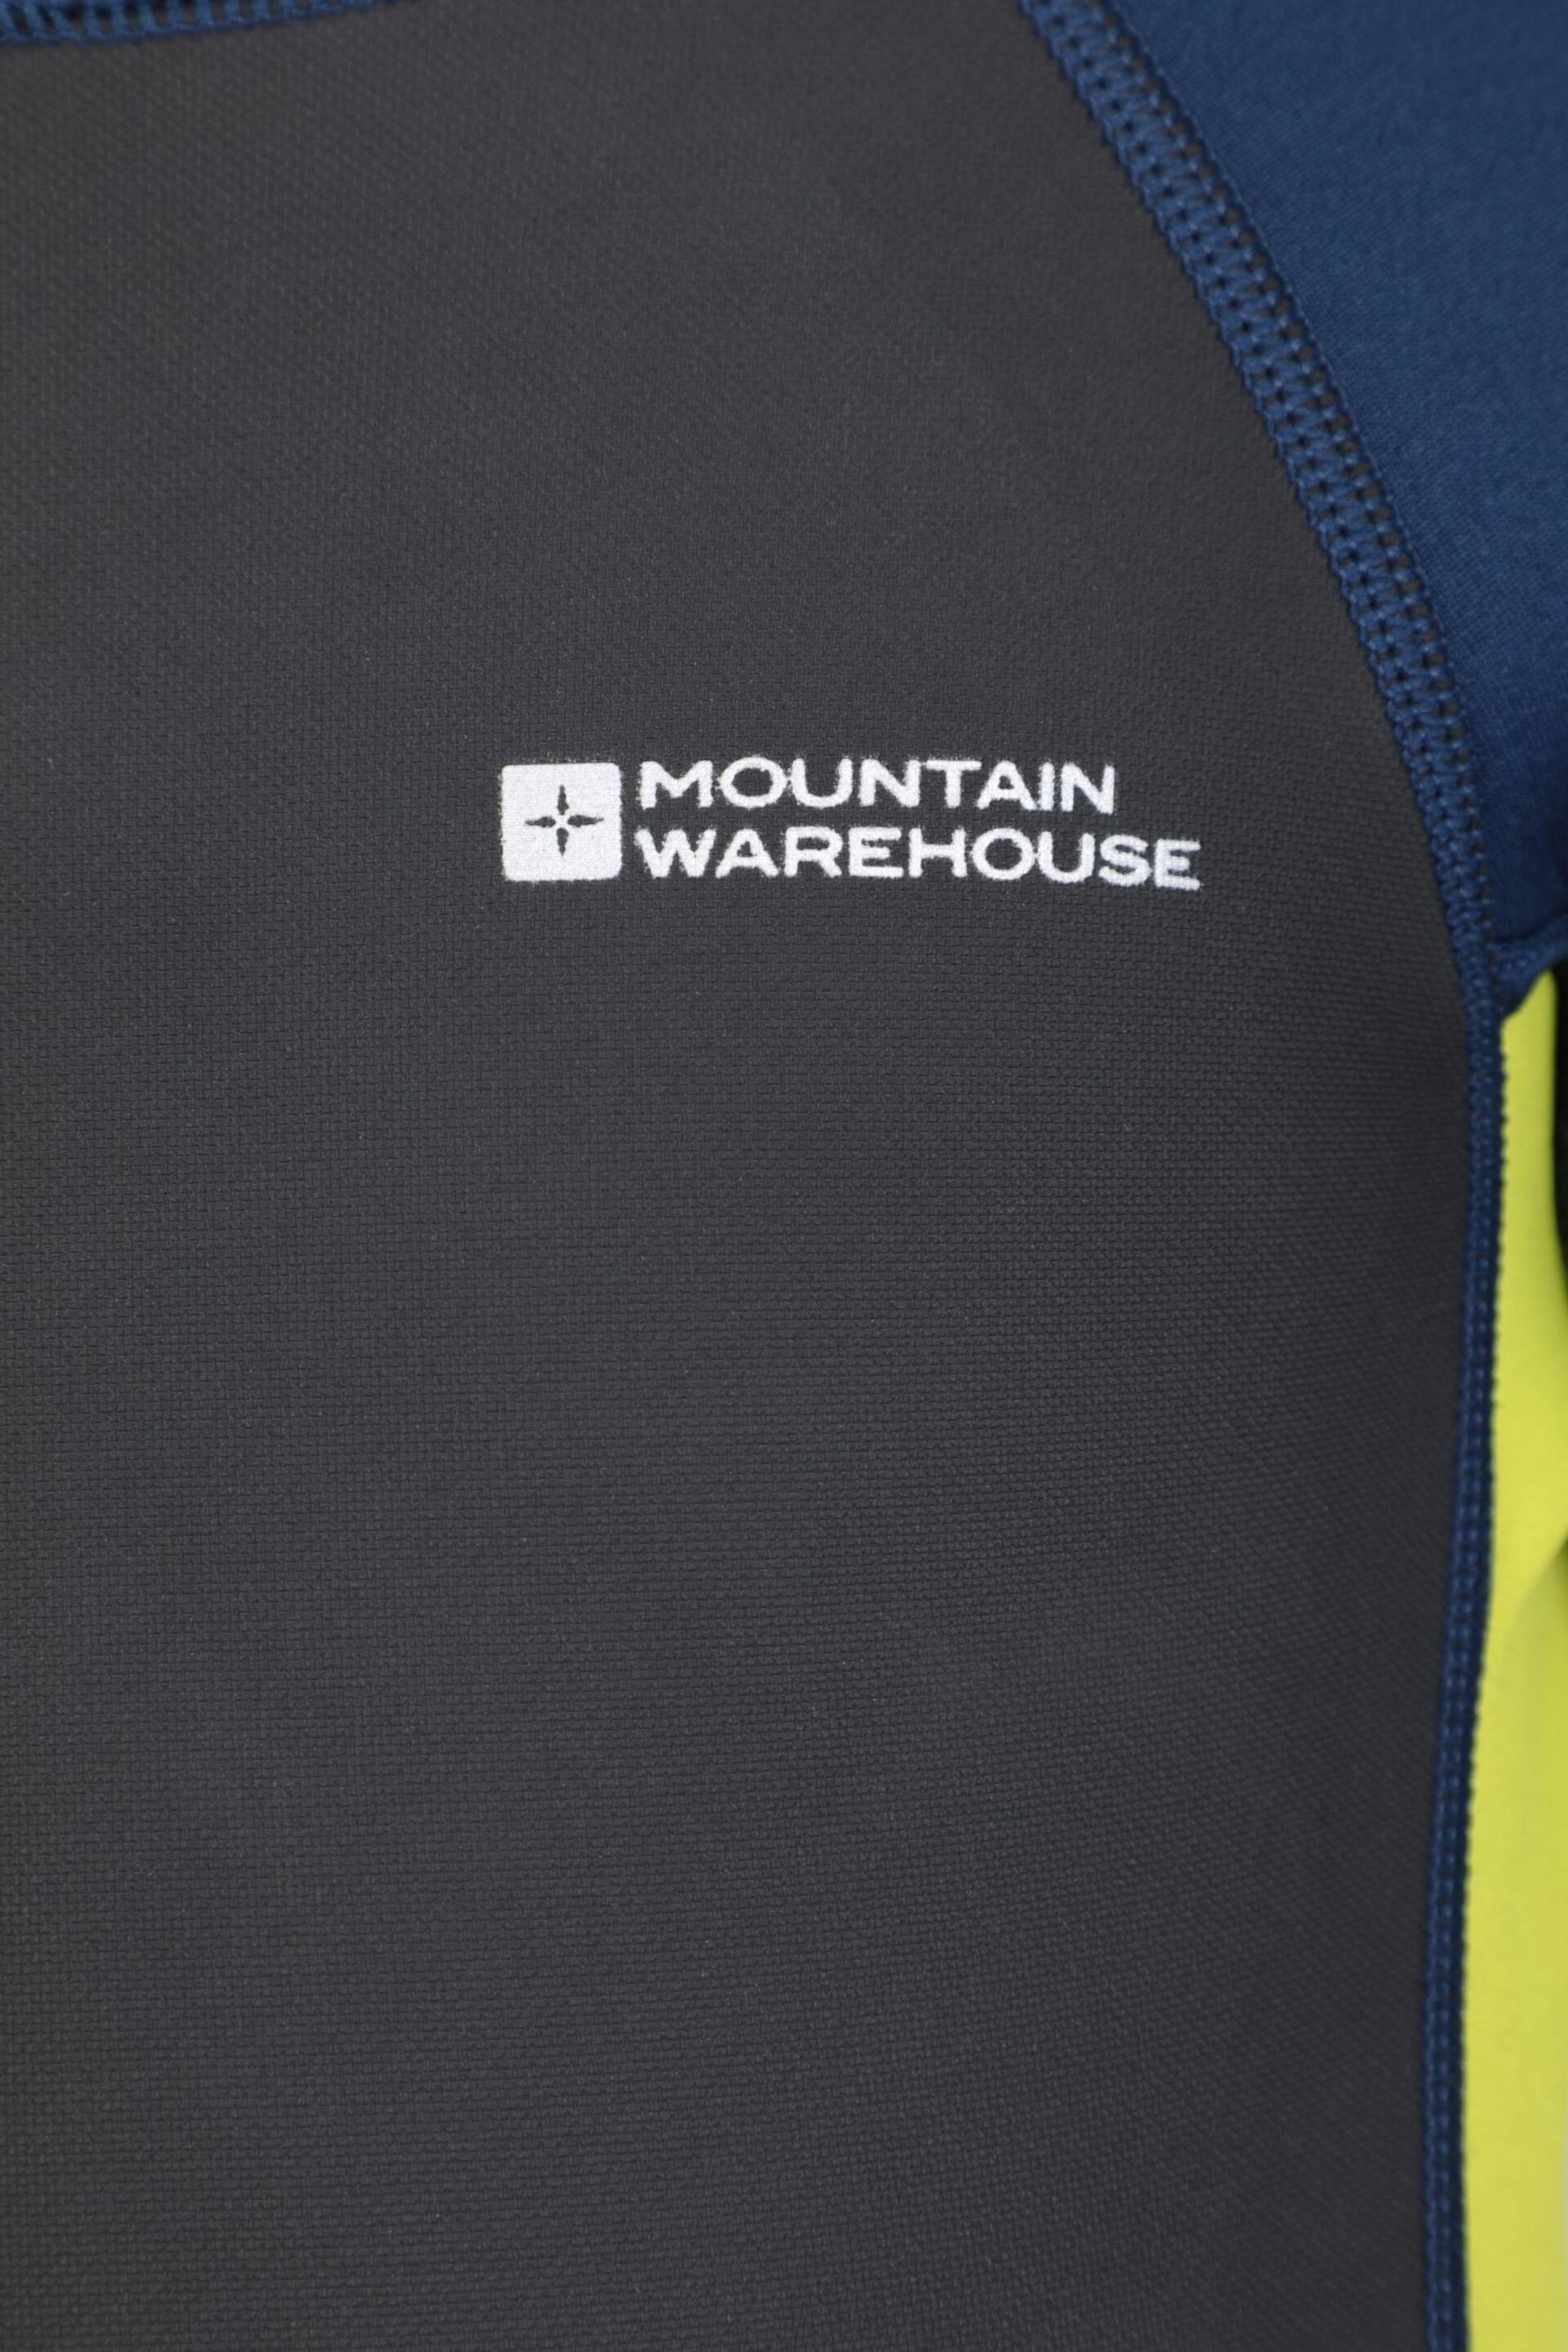 Mountain Warehouse Blue Kids Full Length 2.5mm Neoprene Wetsuit - Image 5 of 5